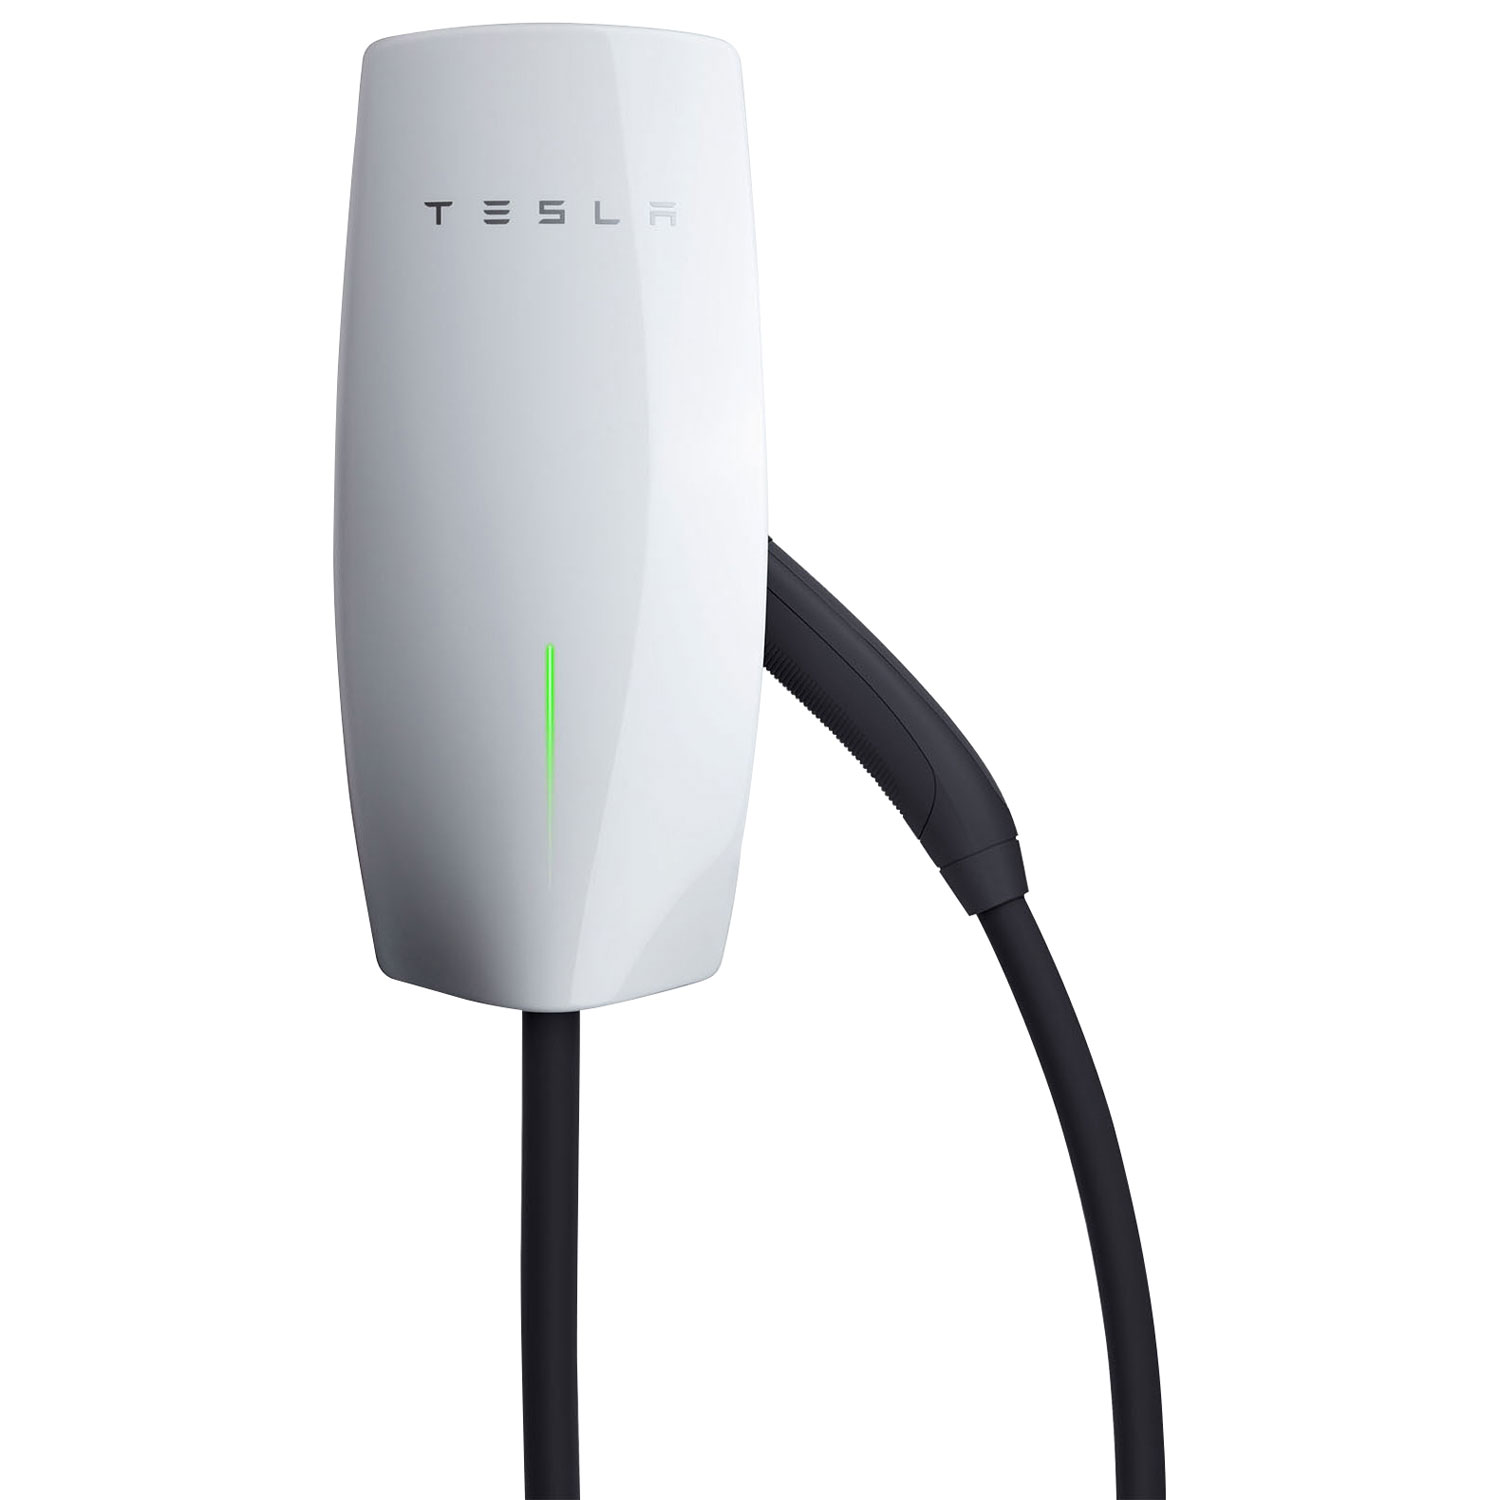 HUB USB boîte à gants / Station d'accueil recharge et médias Tesla